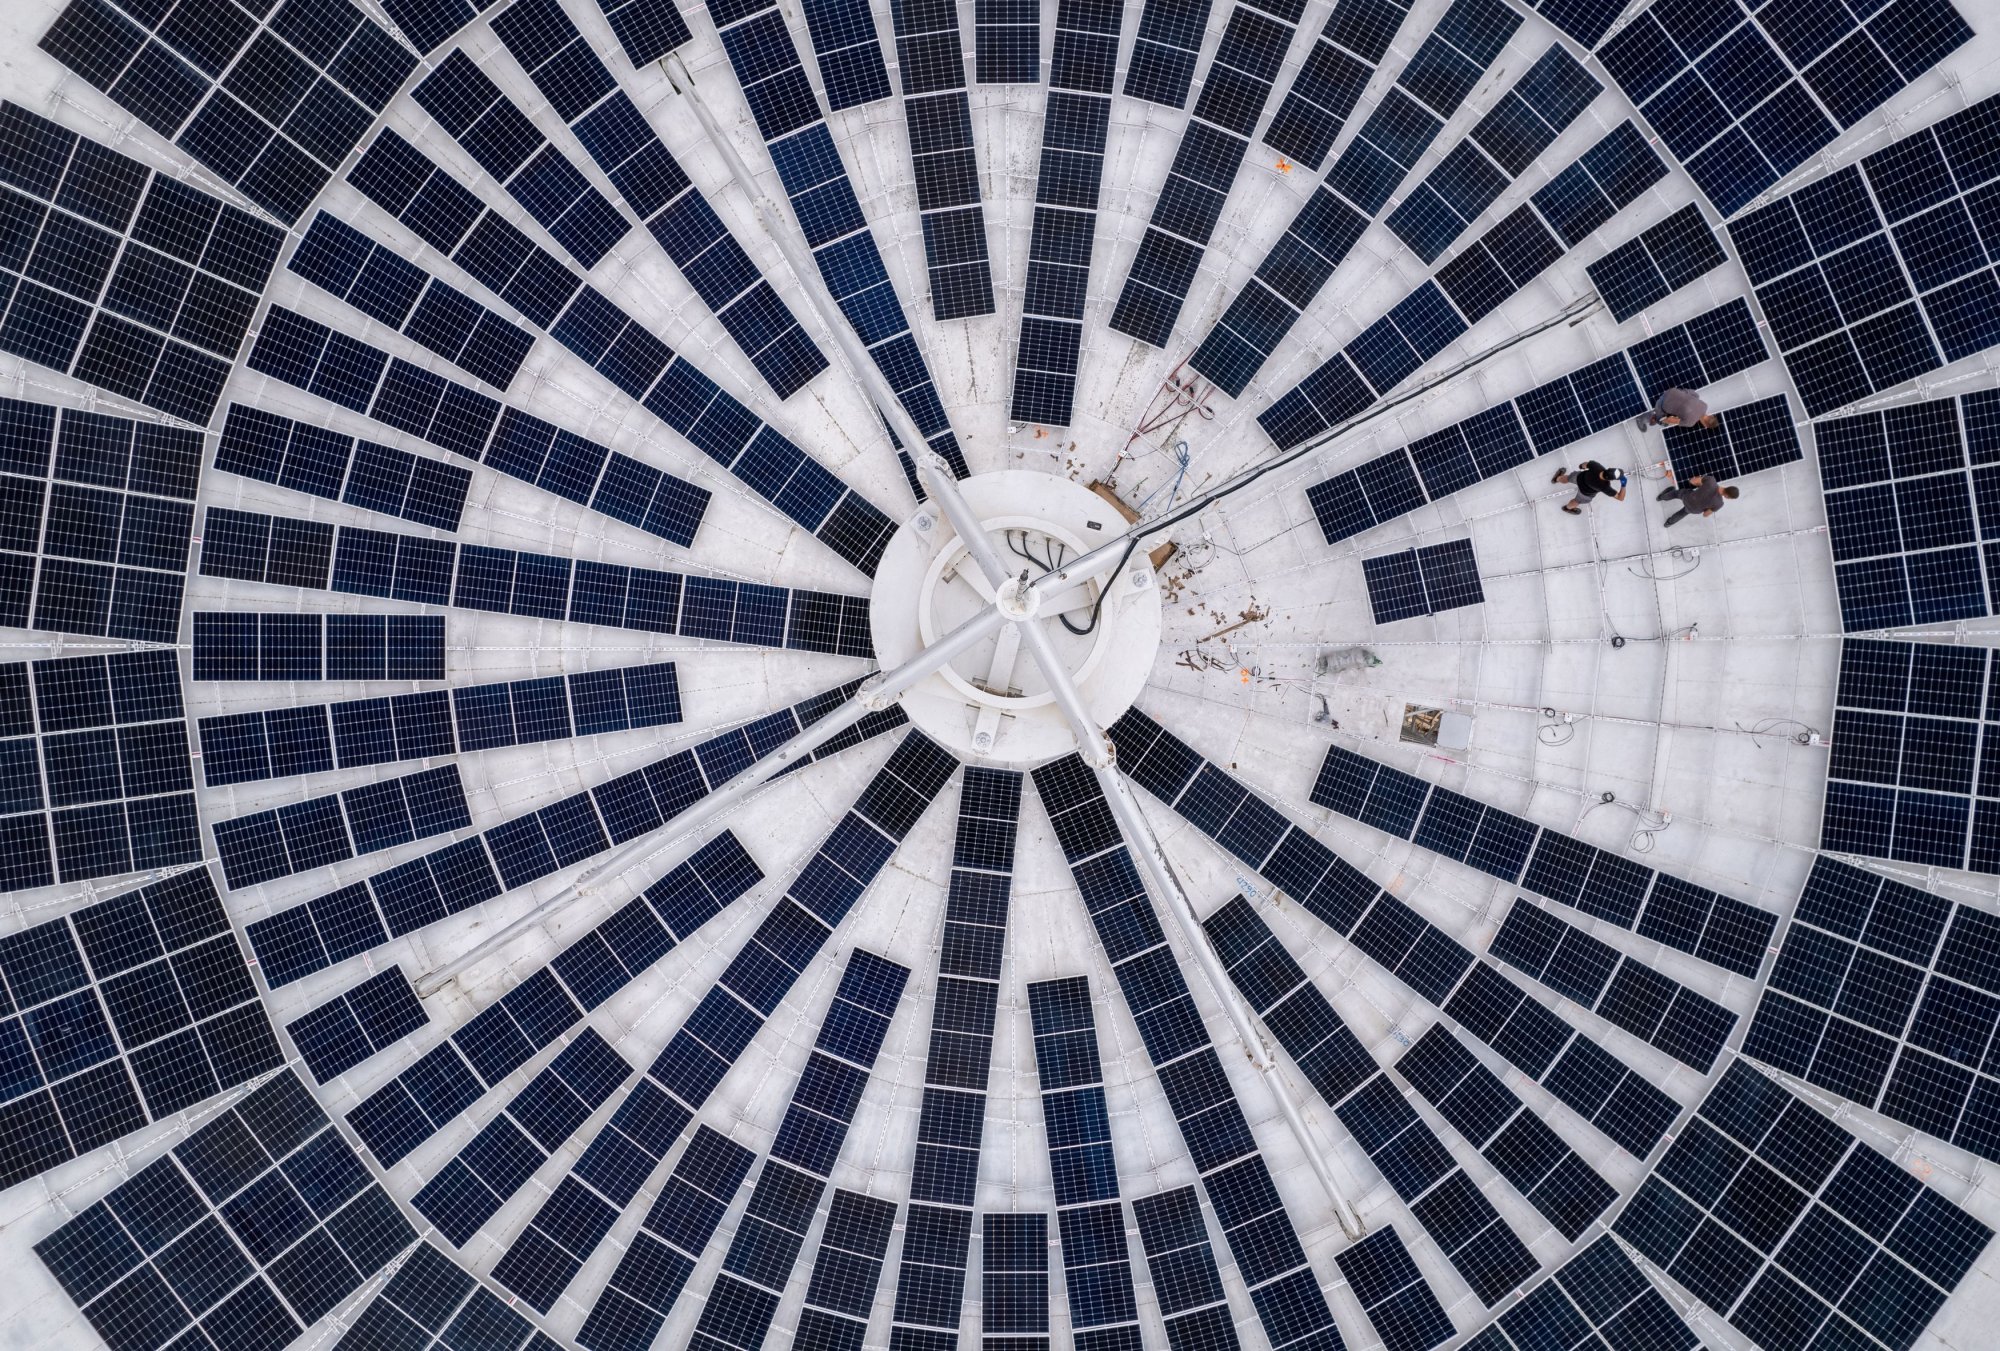 ΑΠΕ: H Ελβετία μετατρέπει γιγάντια δορυφορικά πιάτα σε σταθμούς ηλιακής ενέργειας